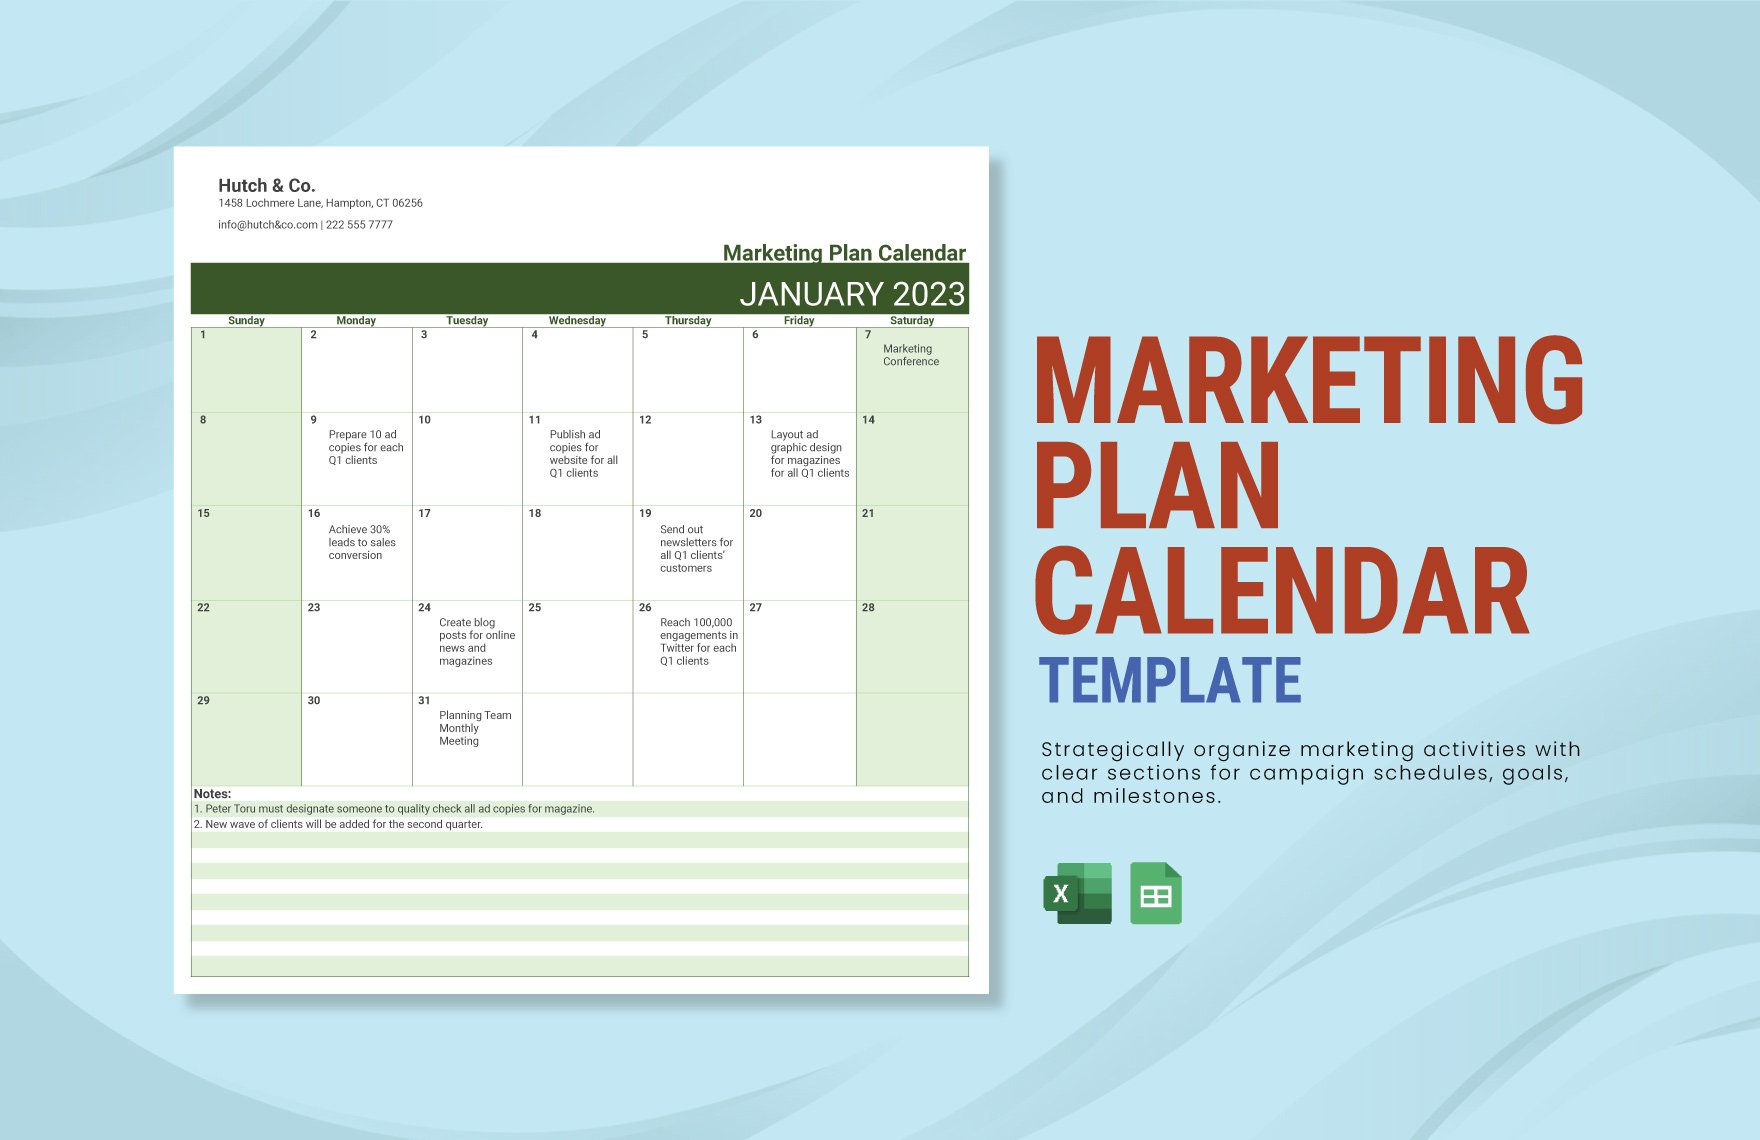 Marketing Plan Calendar Template